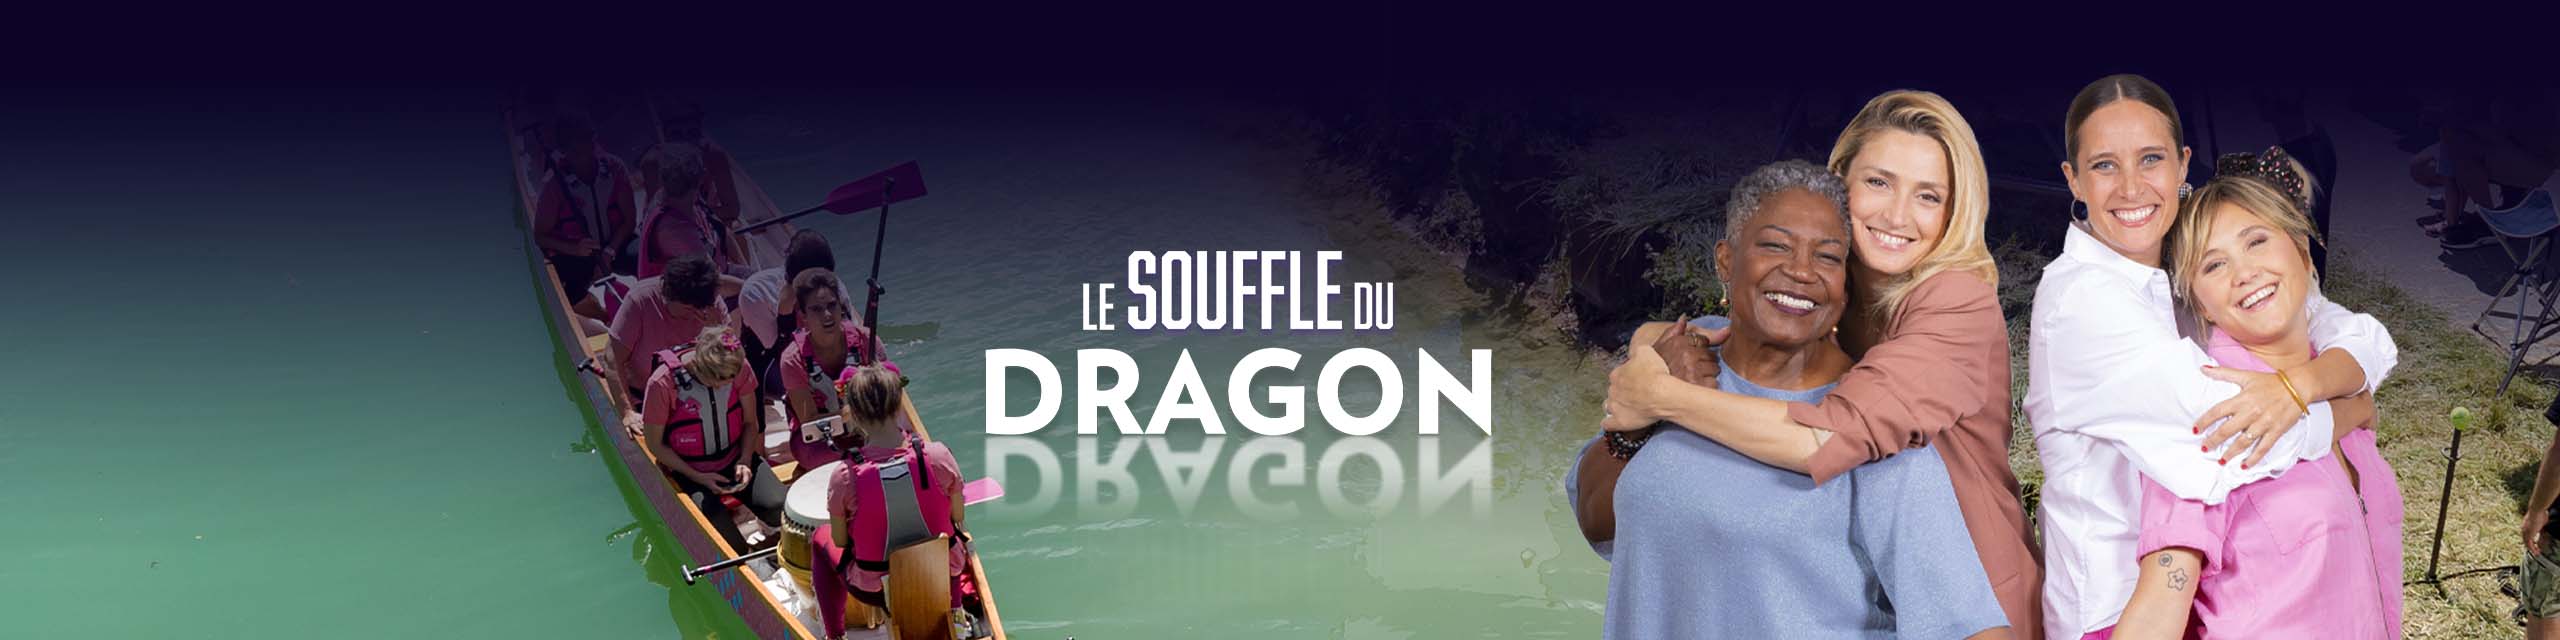 le_souffle_du_dragon